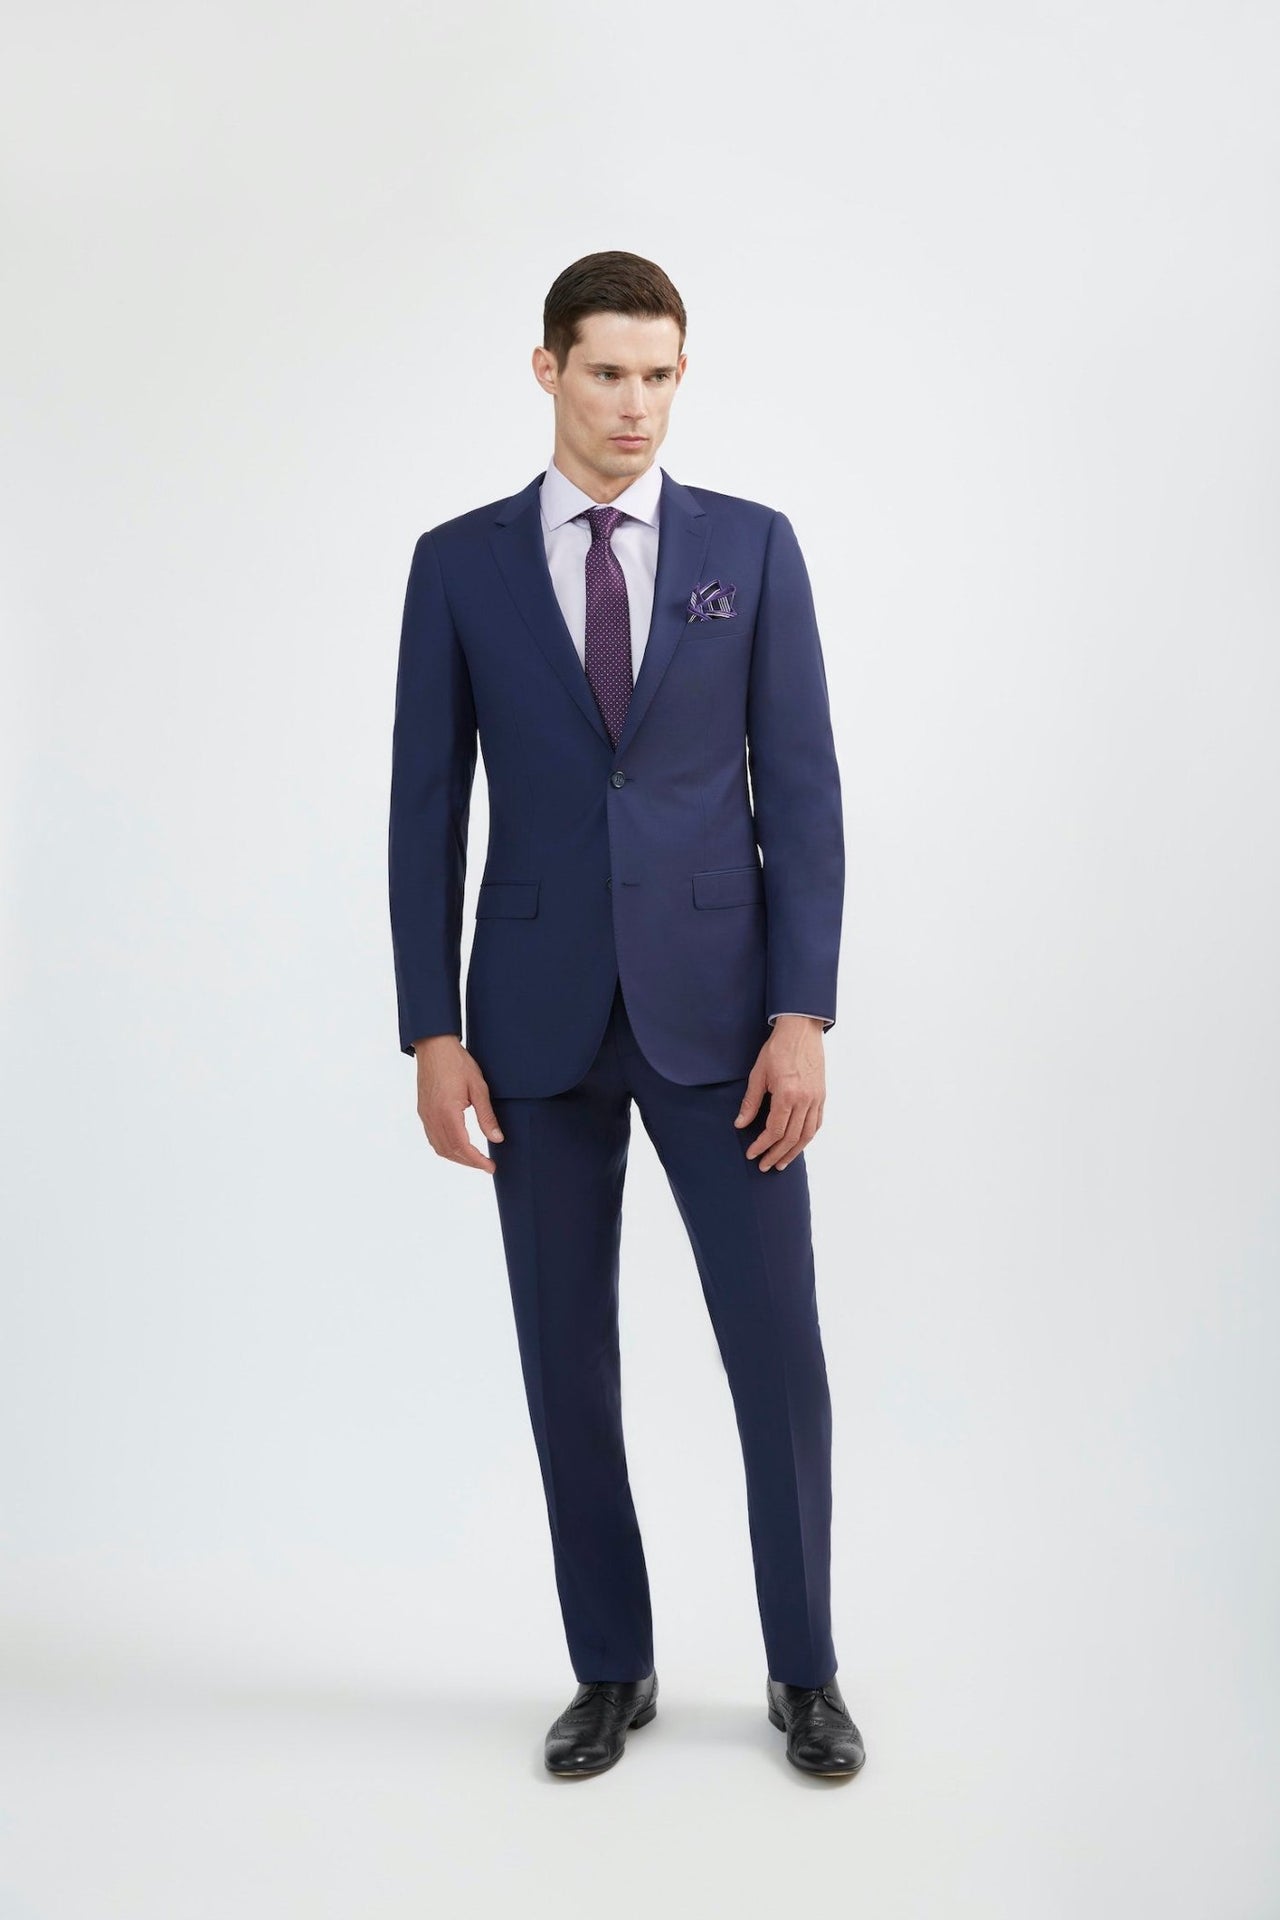 What Color Suit Should I Get – Black, Blue, or Grey?